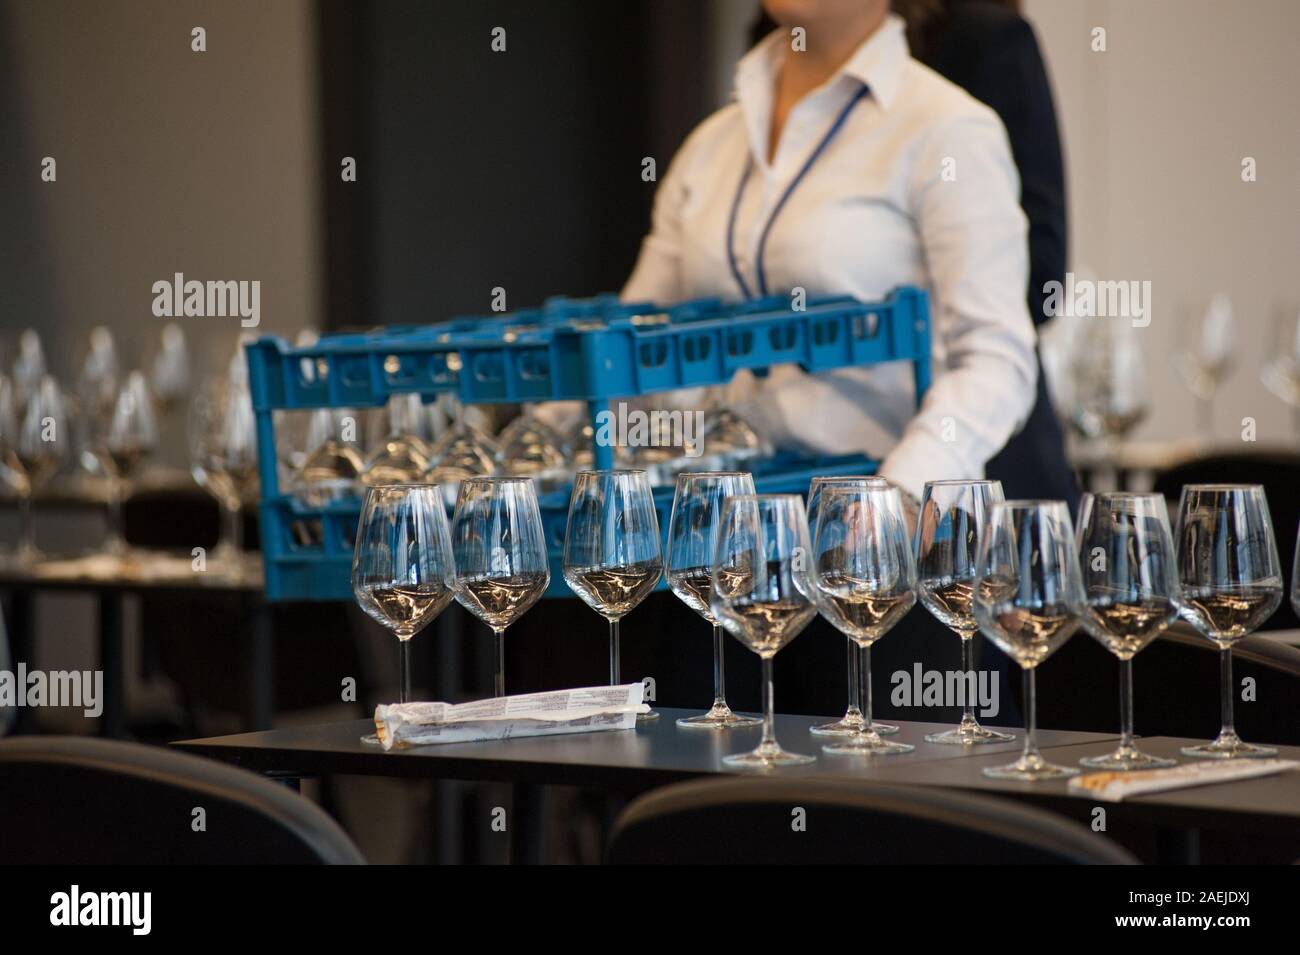 Kellnerin stellen Sie die Tabellen mit Crystal gobles Für eine Weinprobe Werkstatt. Catering Service und Personal bei der Arbeit. Stockfoto